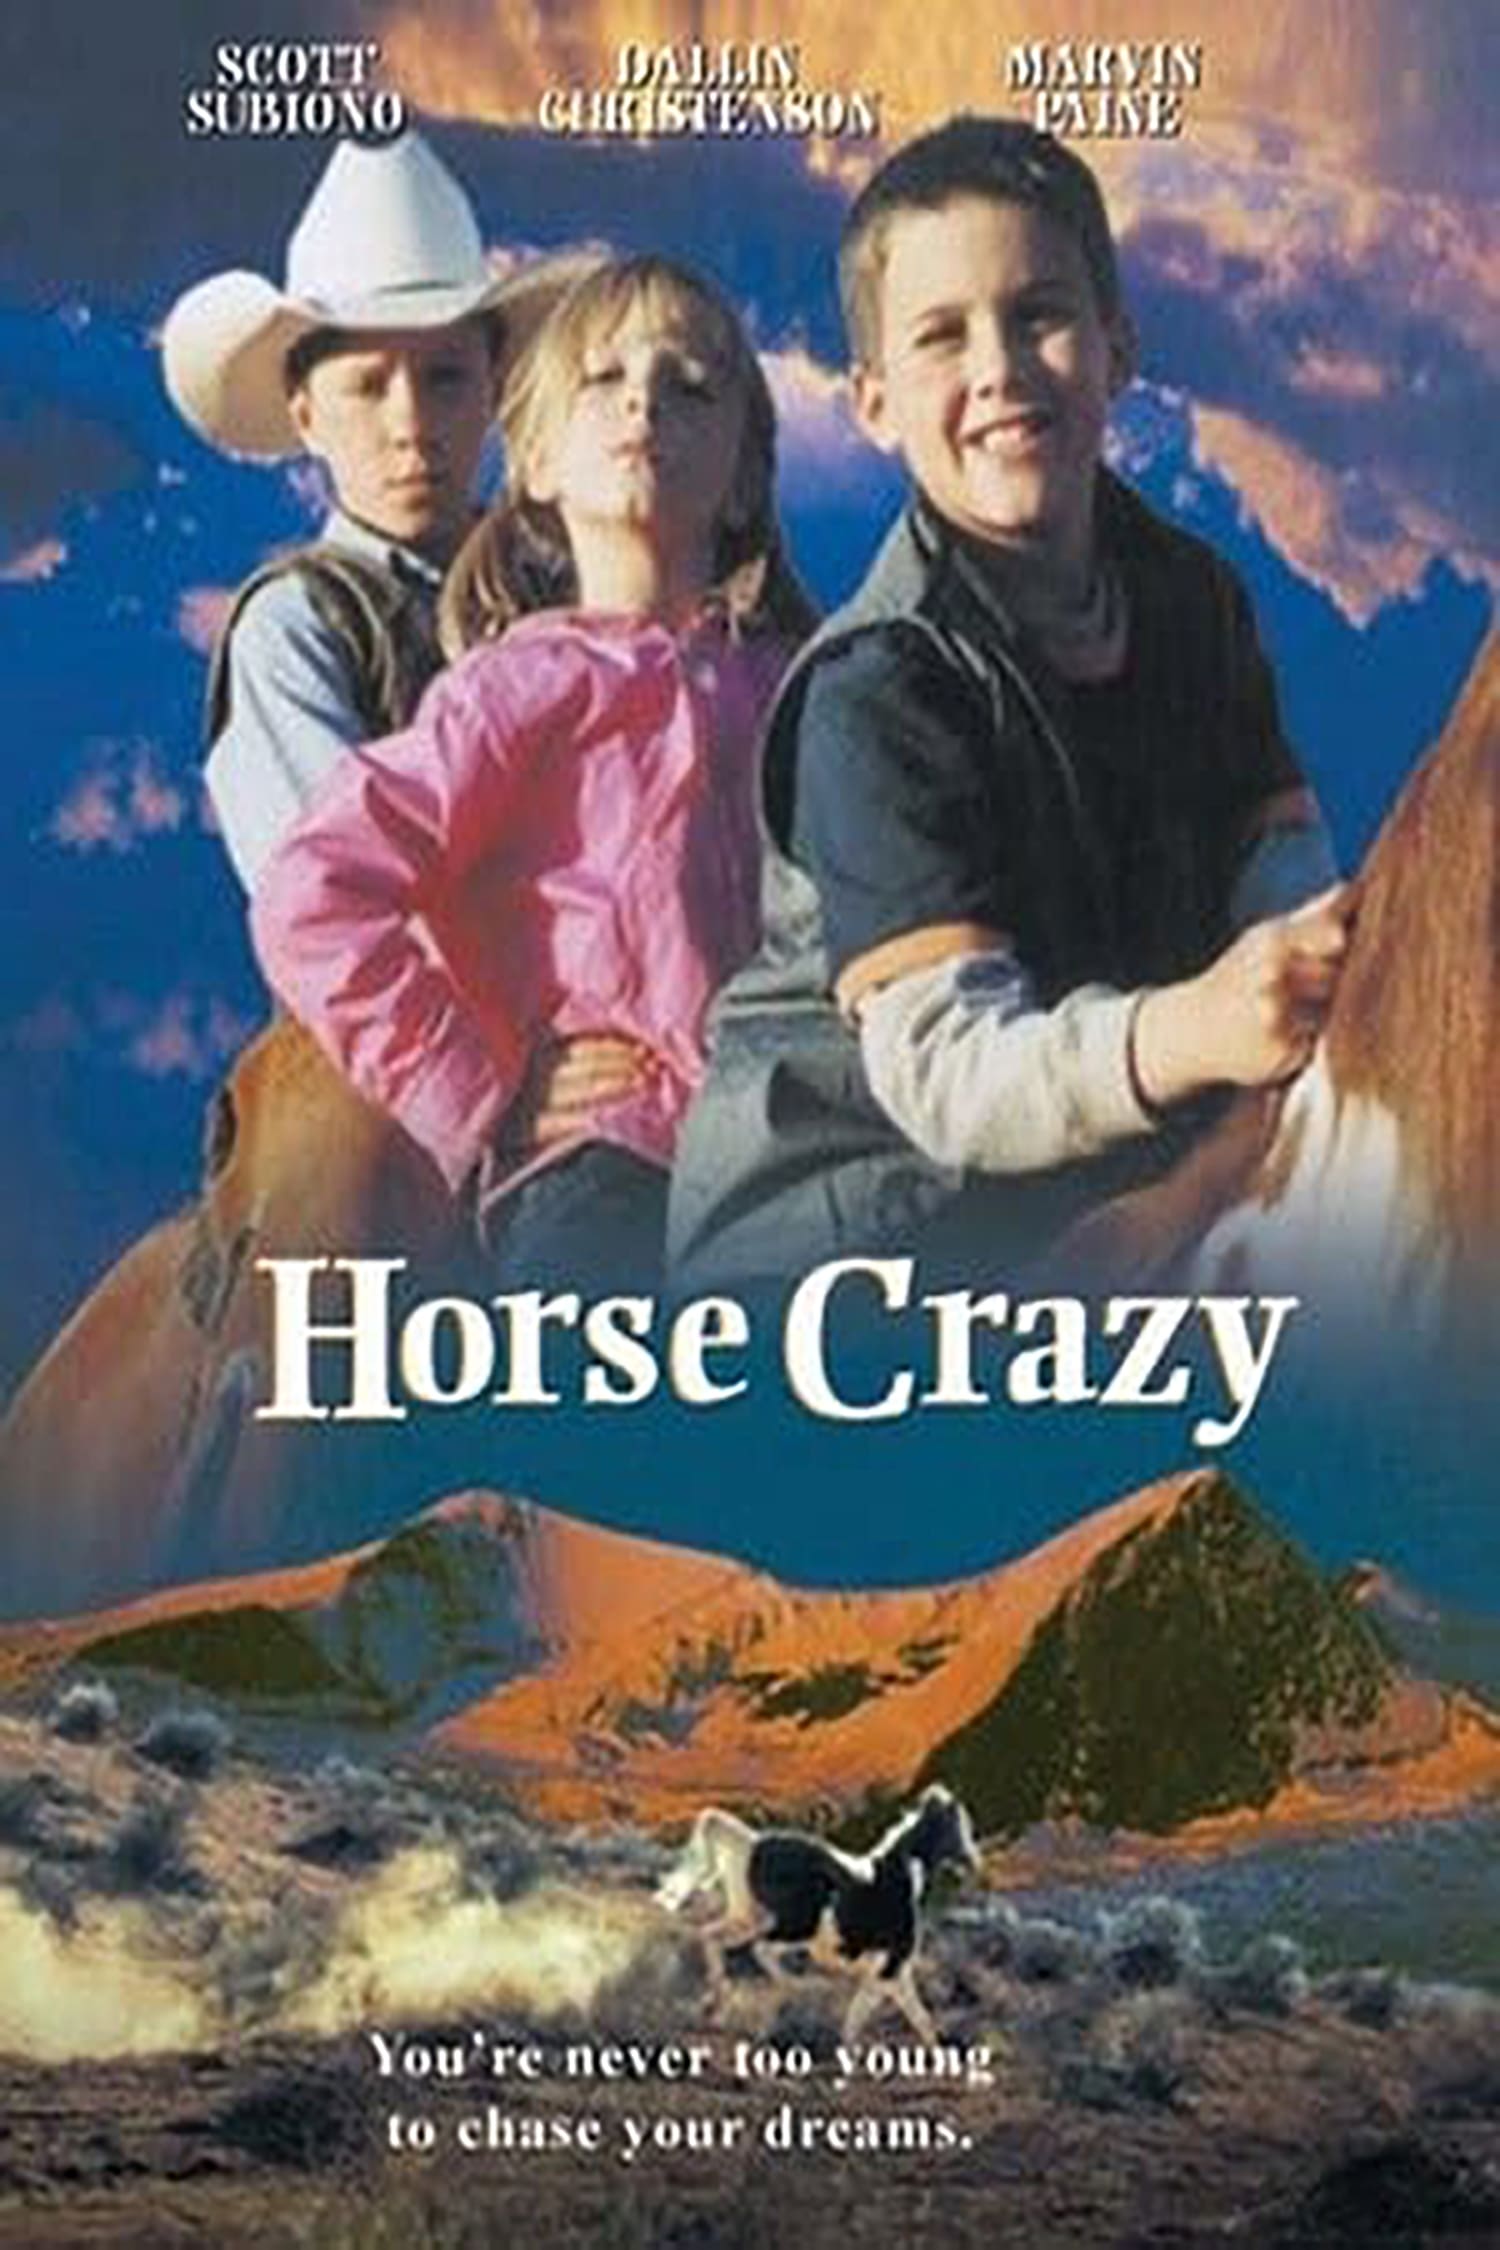 Horse Crazy (2001) Download